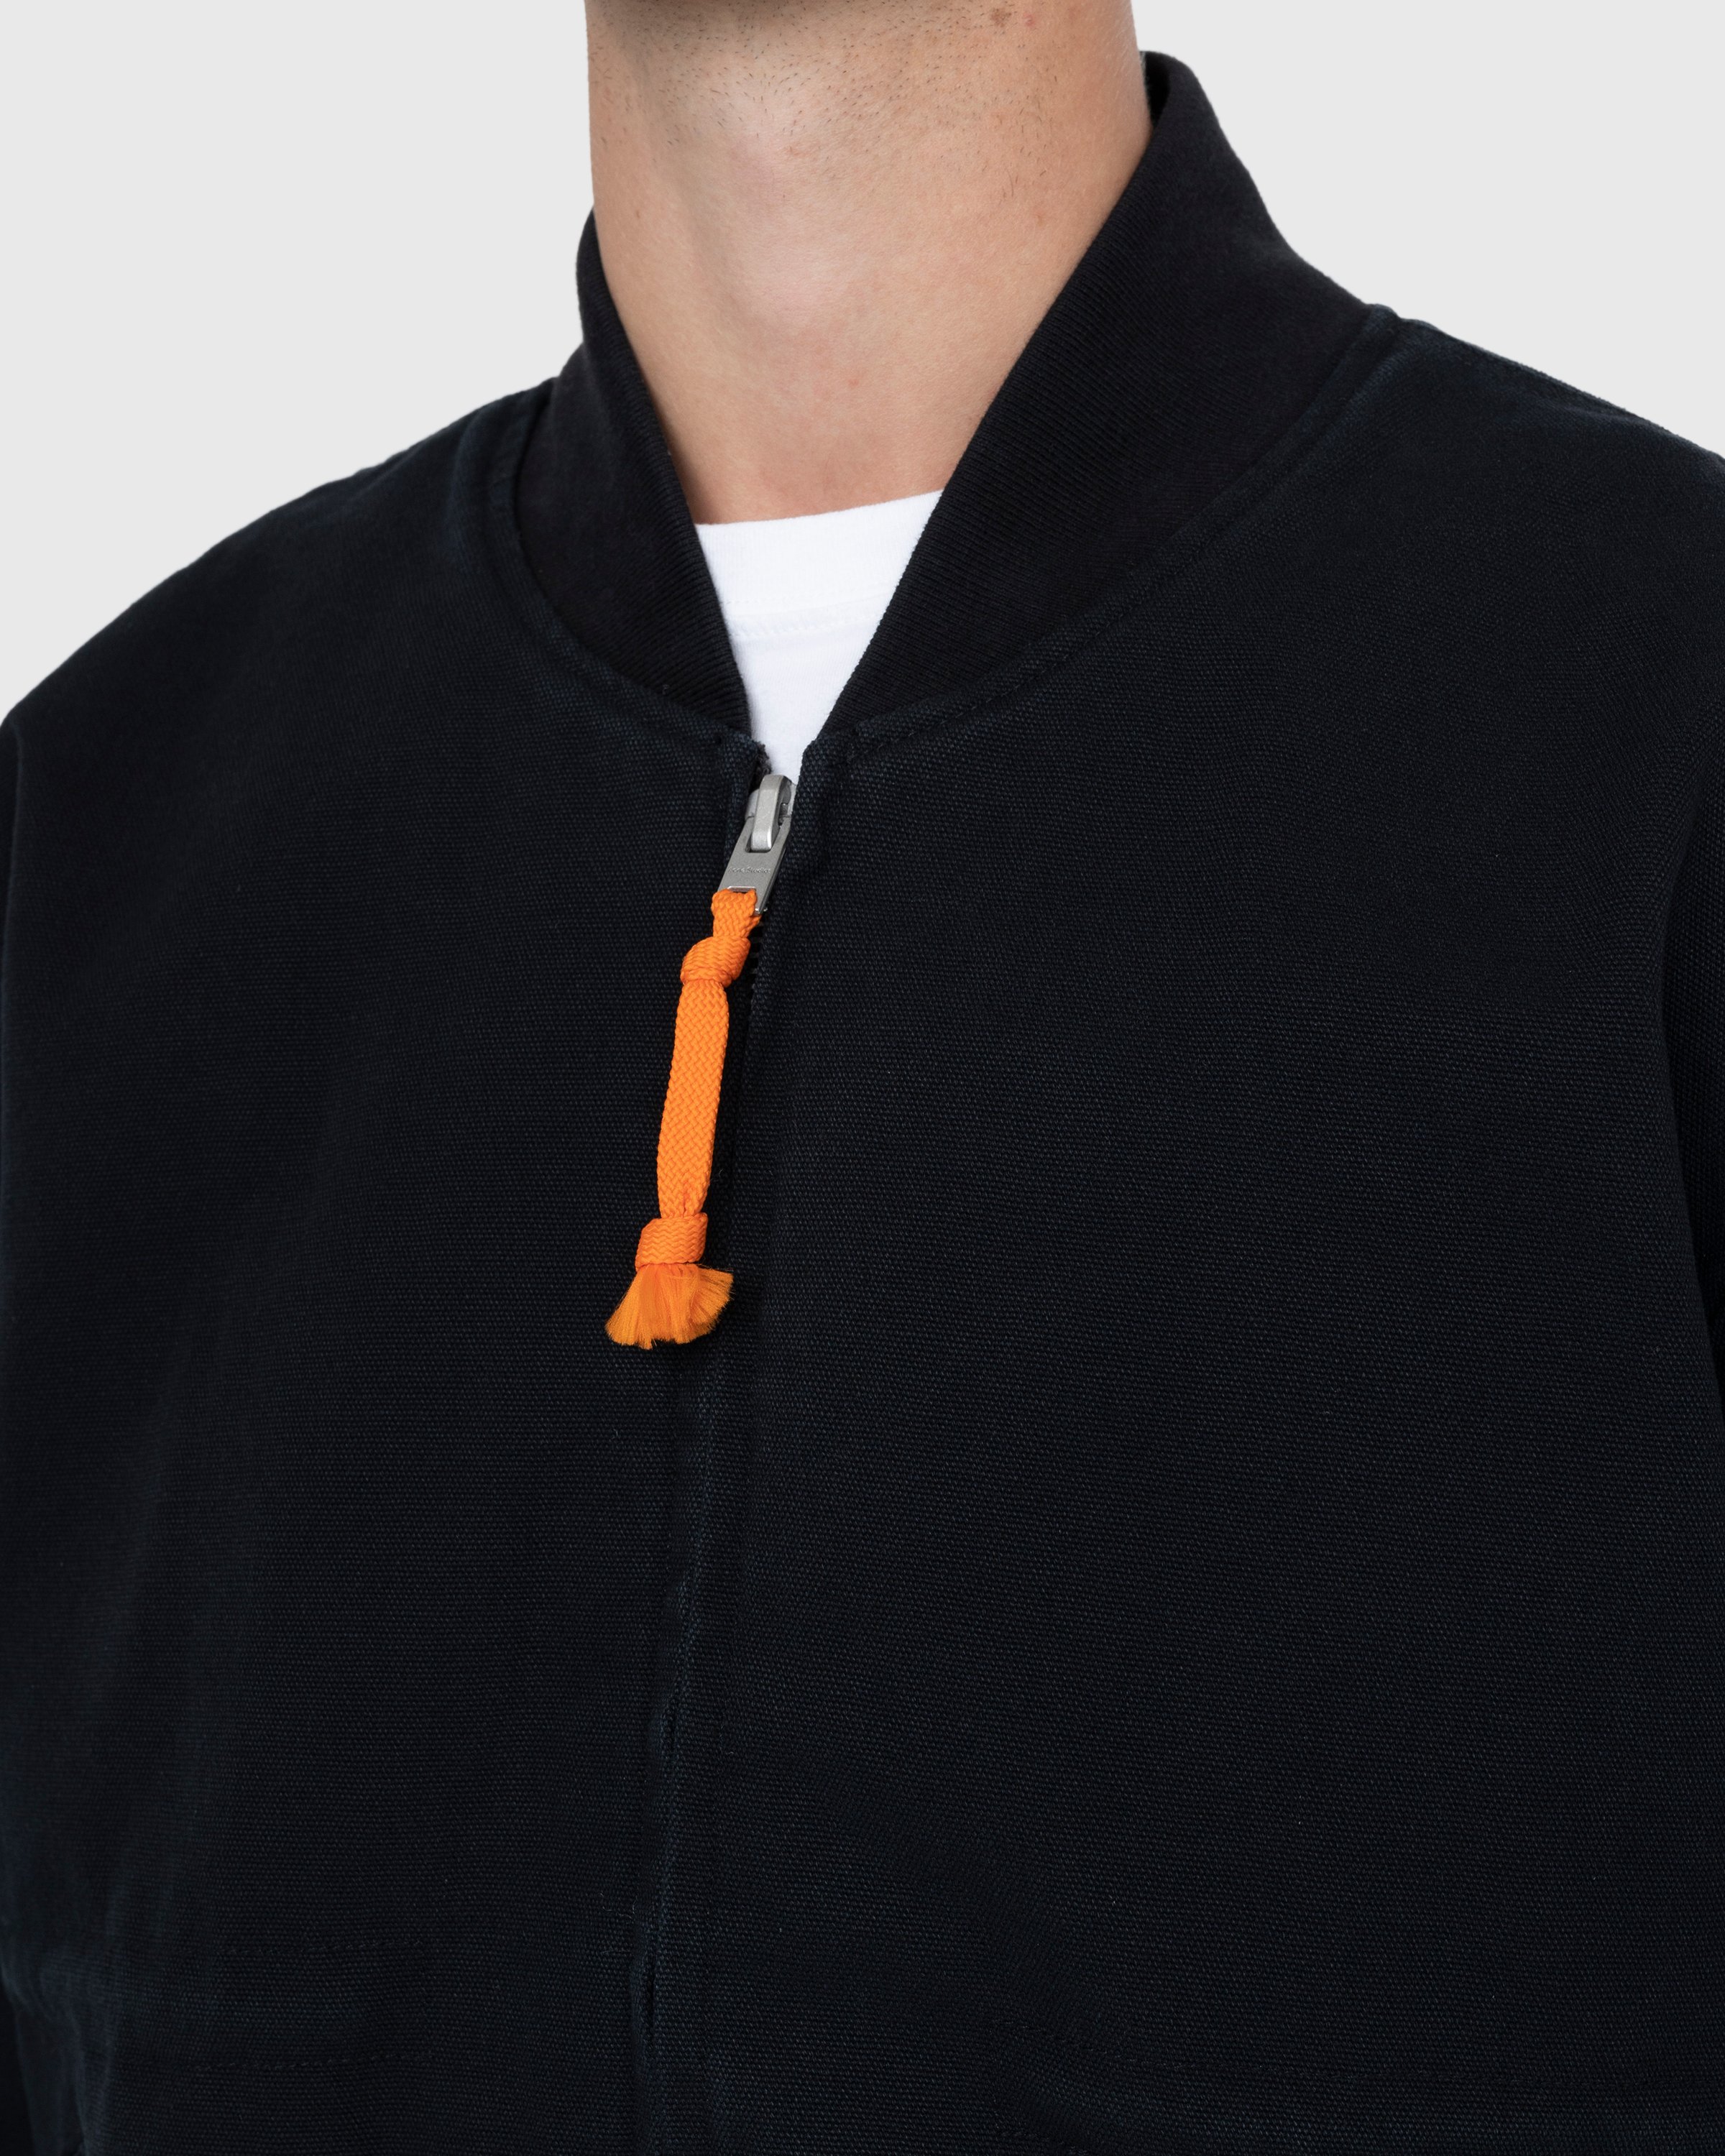 Acne Studios - Organic Cotton Bomber Jacket Black - Clothing - Black - Image 5